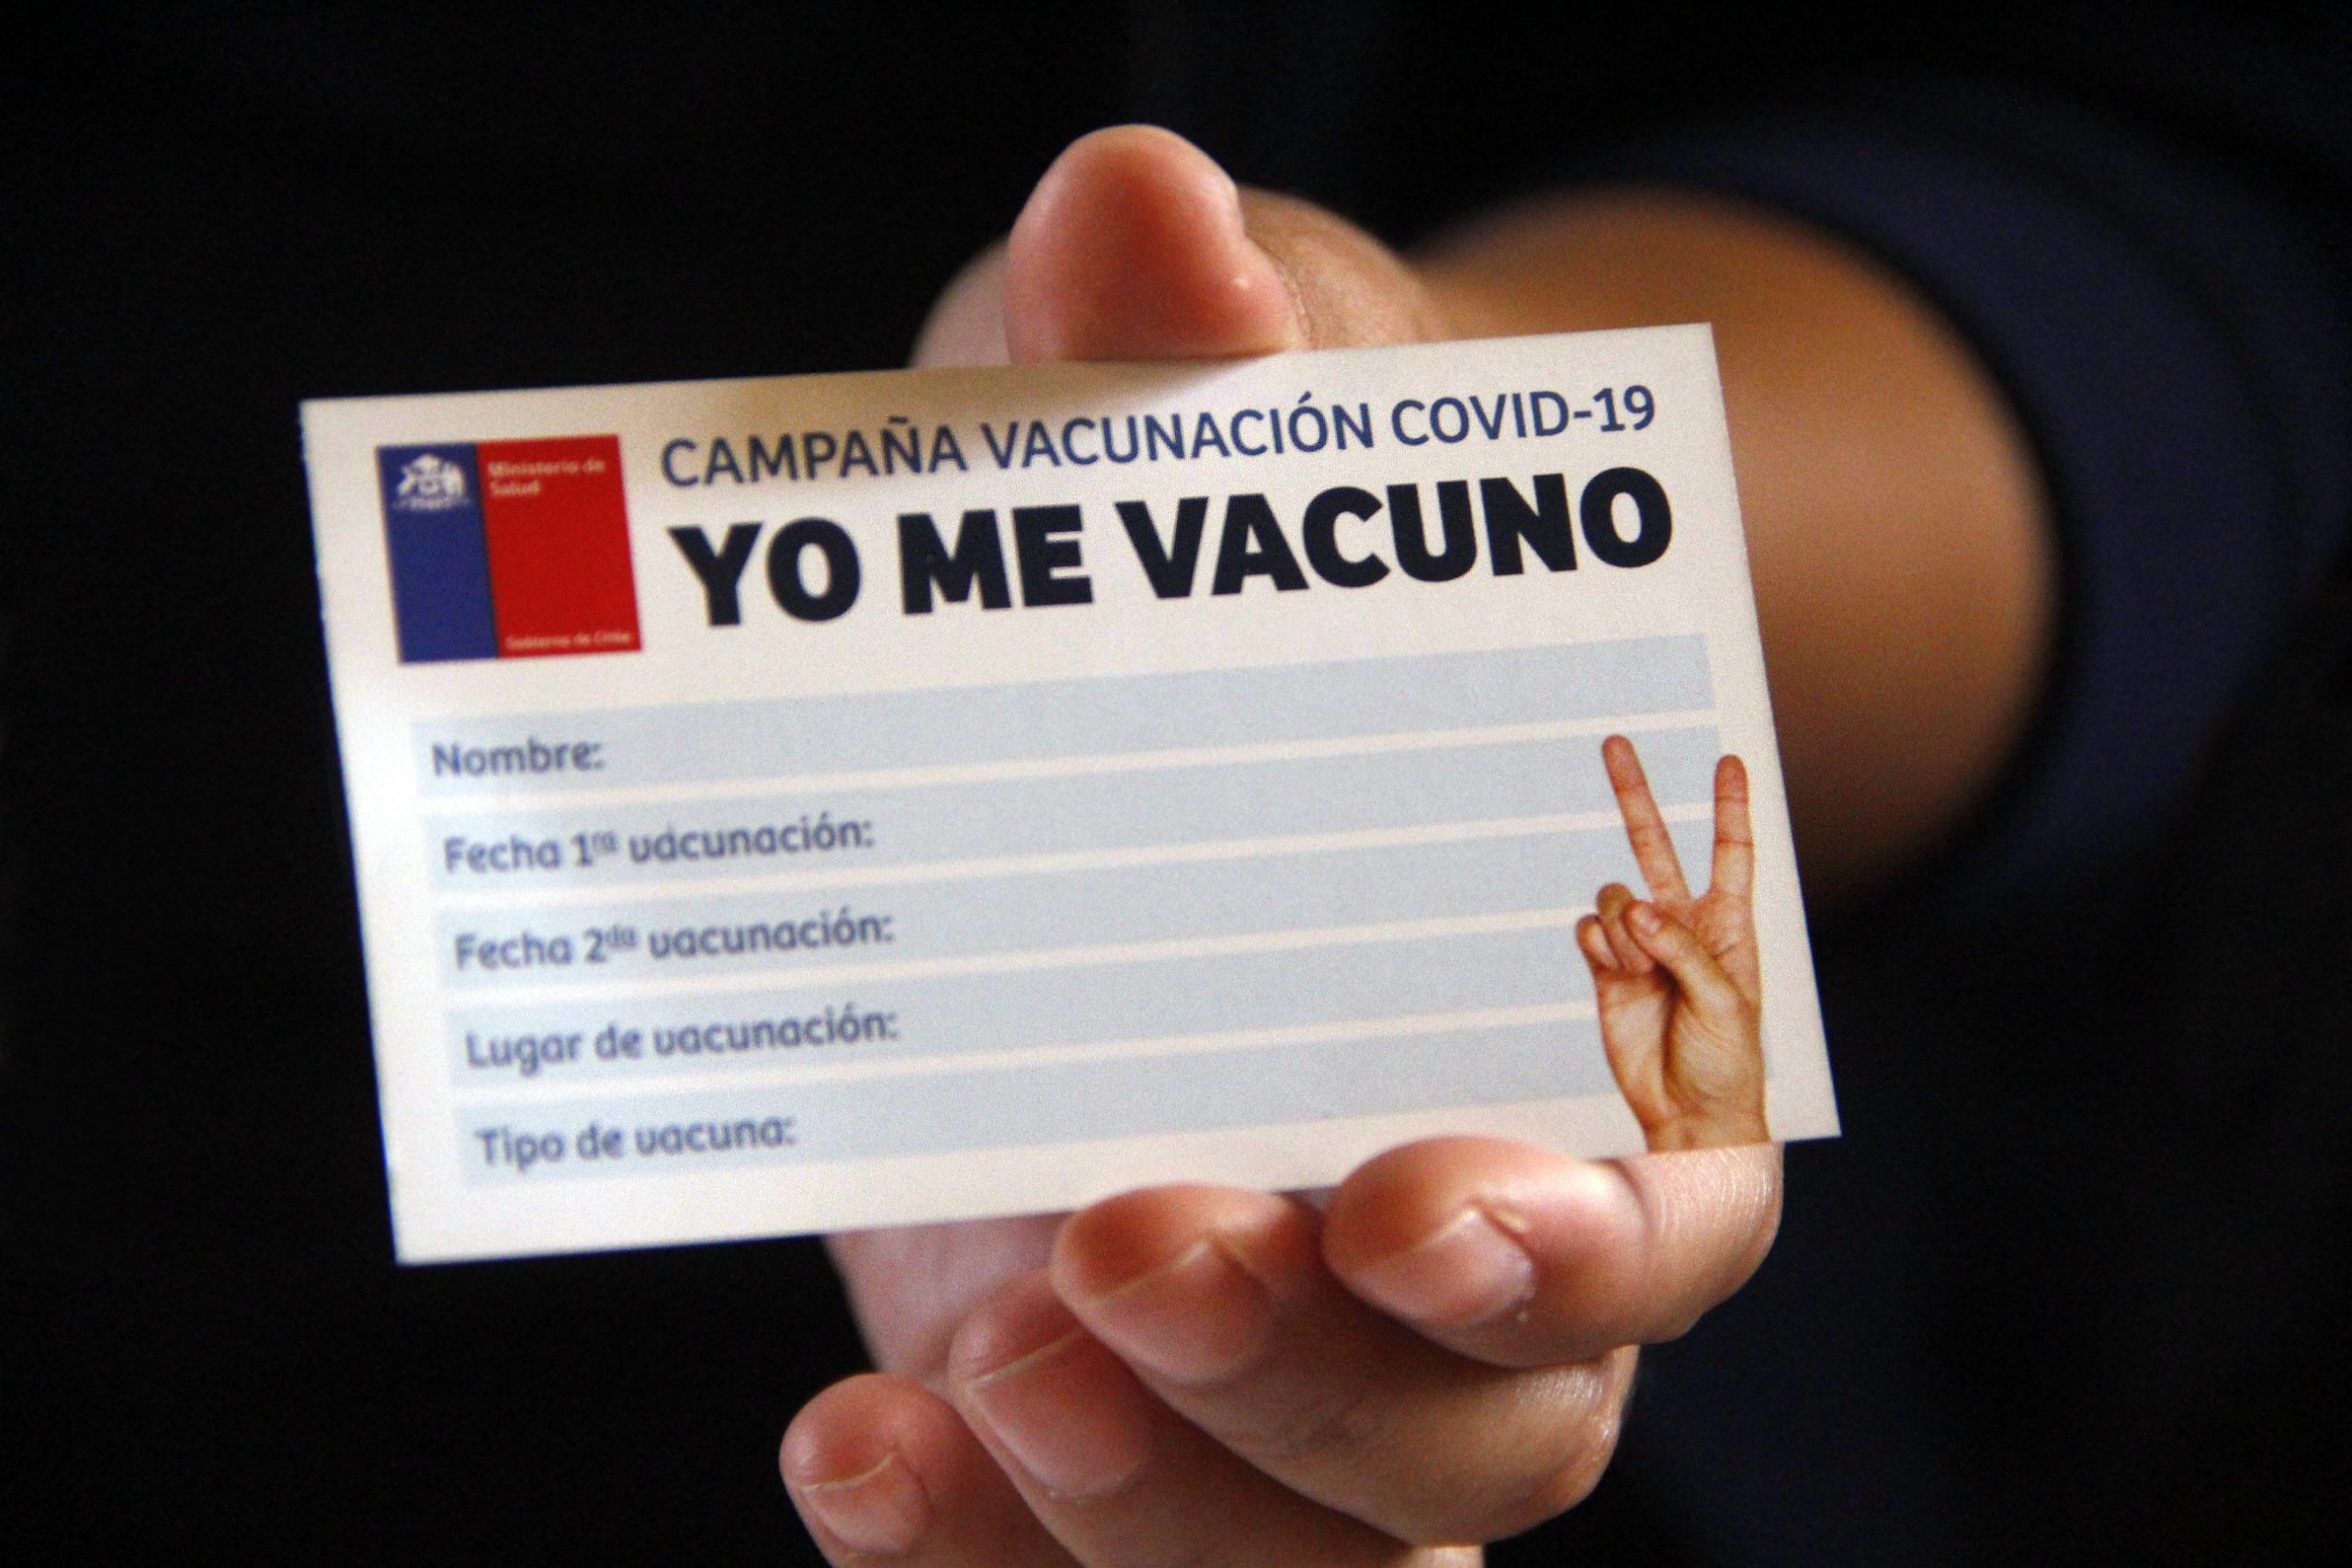 Evidencia presentada ante notario sobre vacuna-magnetización Iquique - Chile